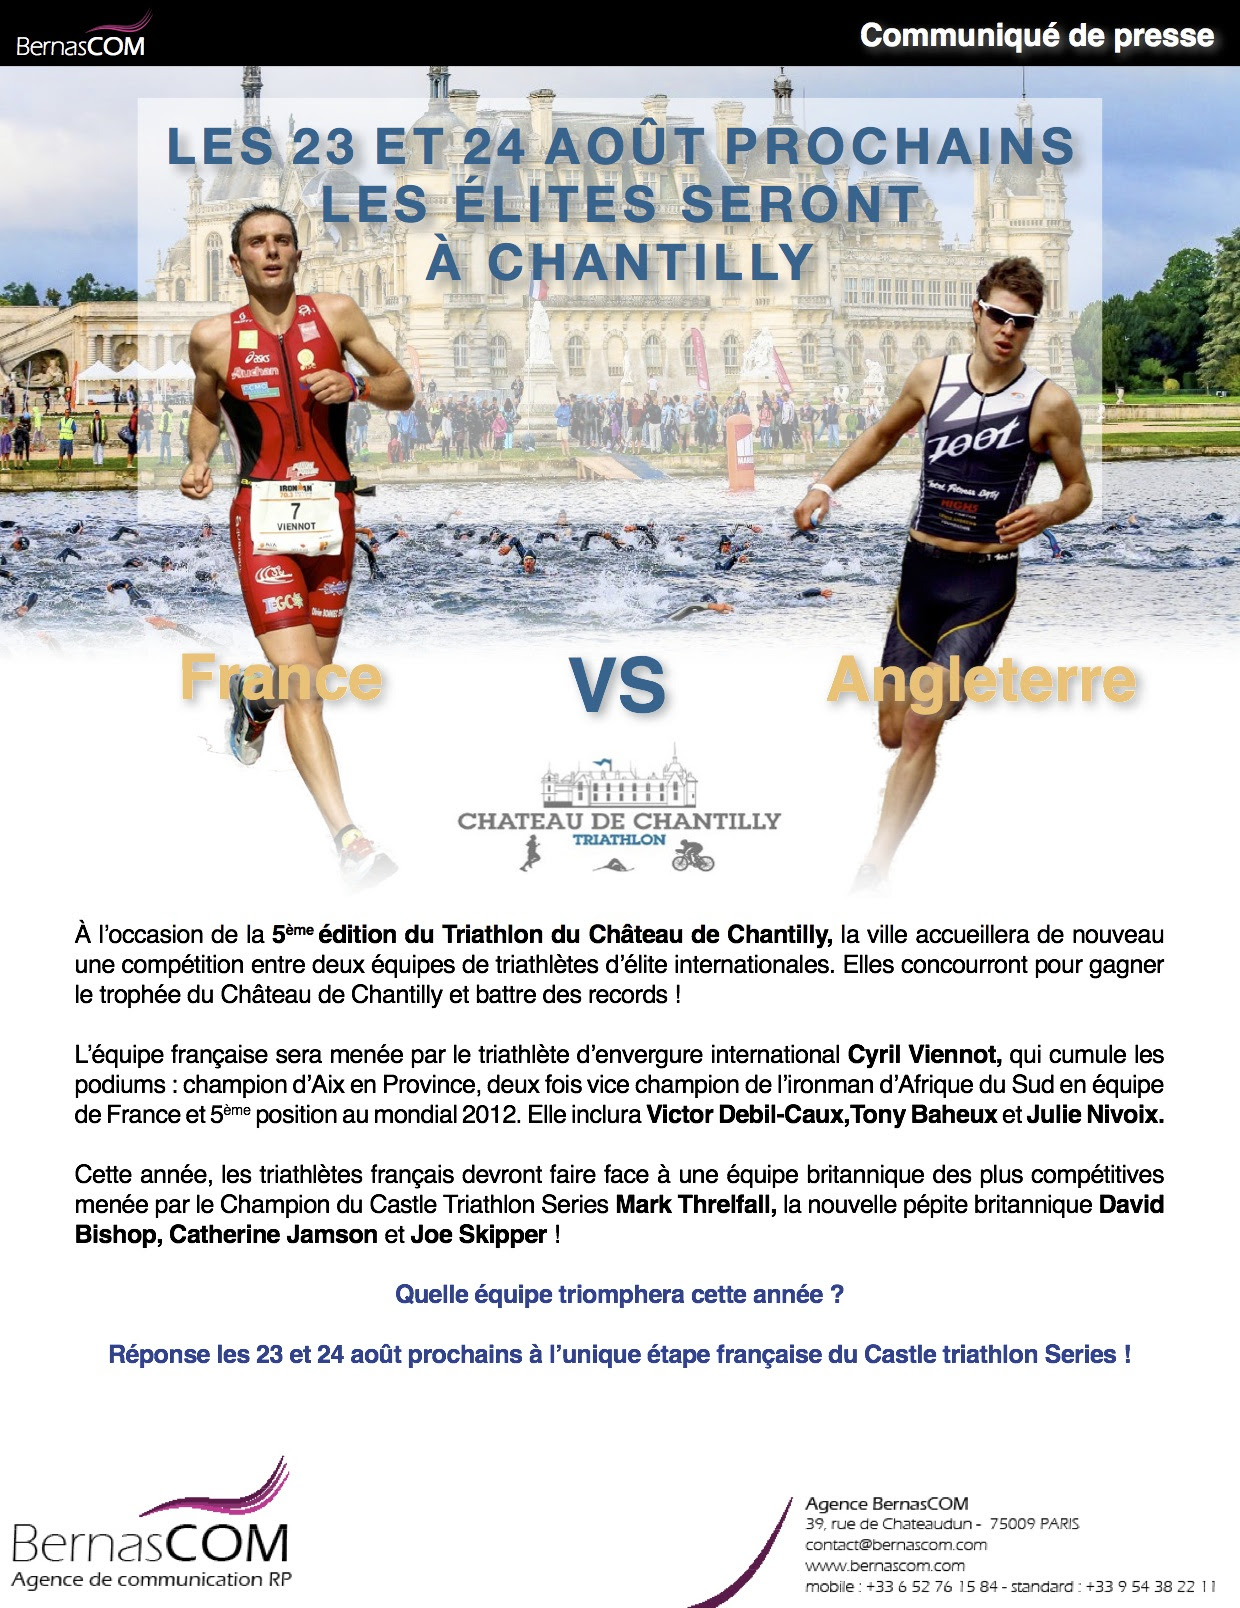 Ce weekend les elites seront aux Triathlon du Château de Chantilly!